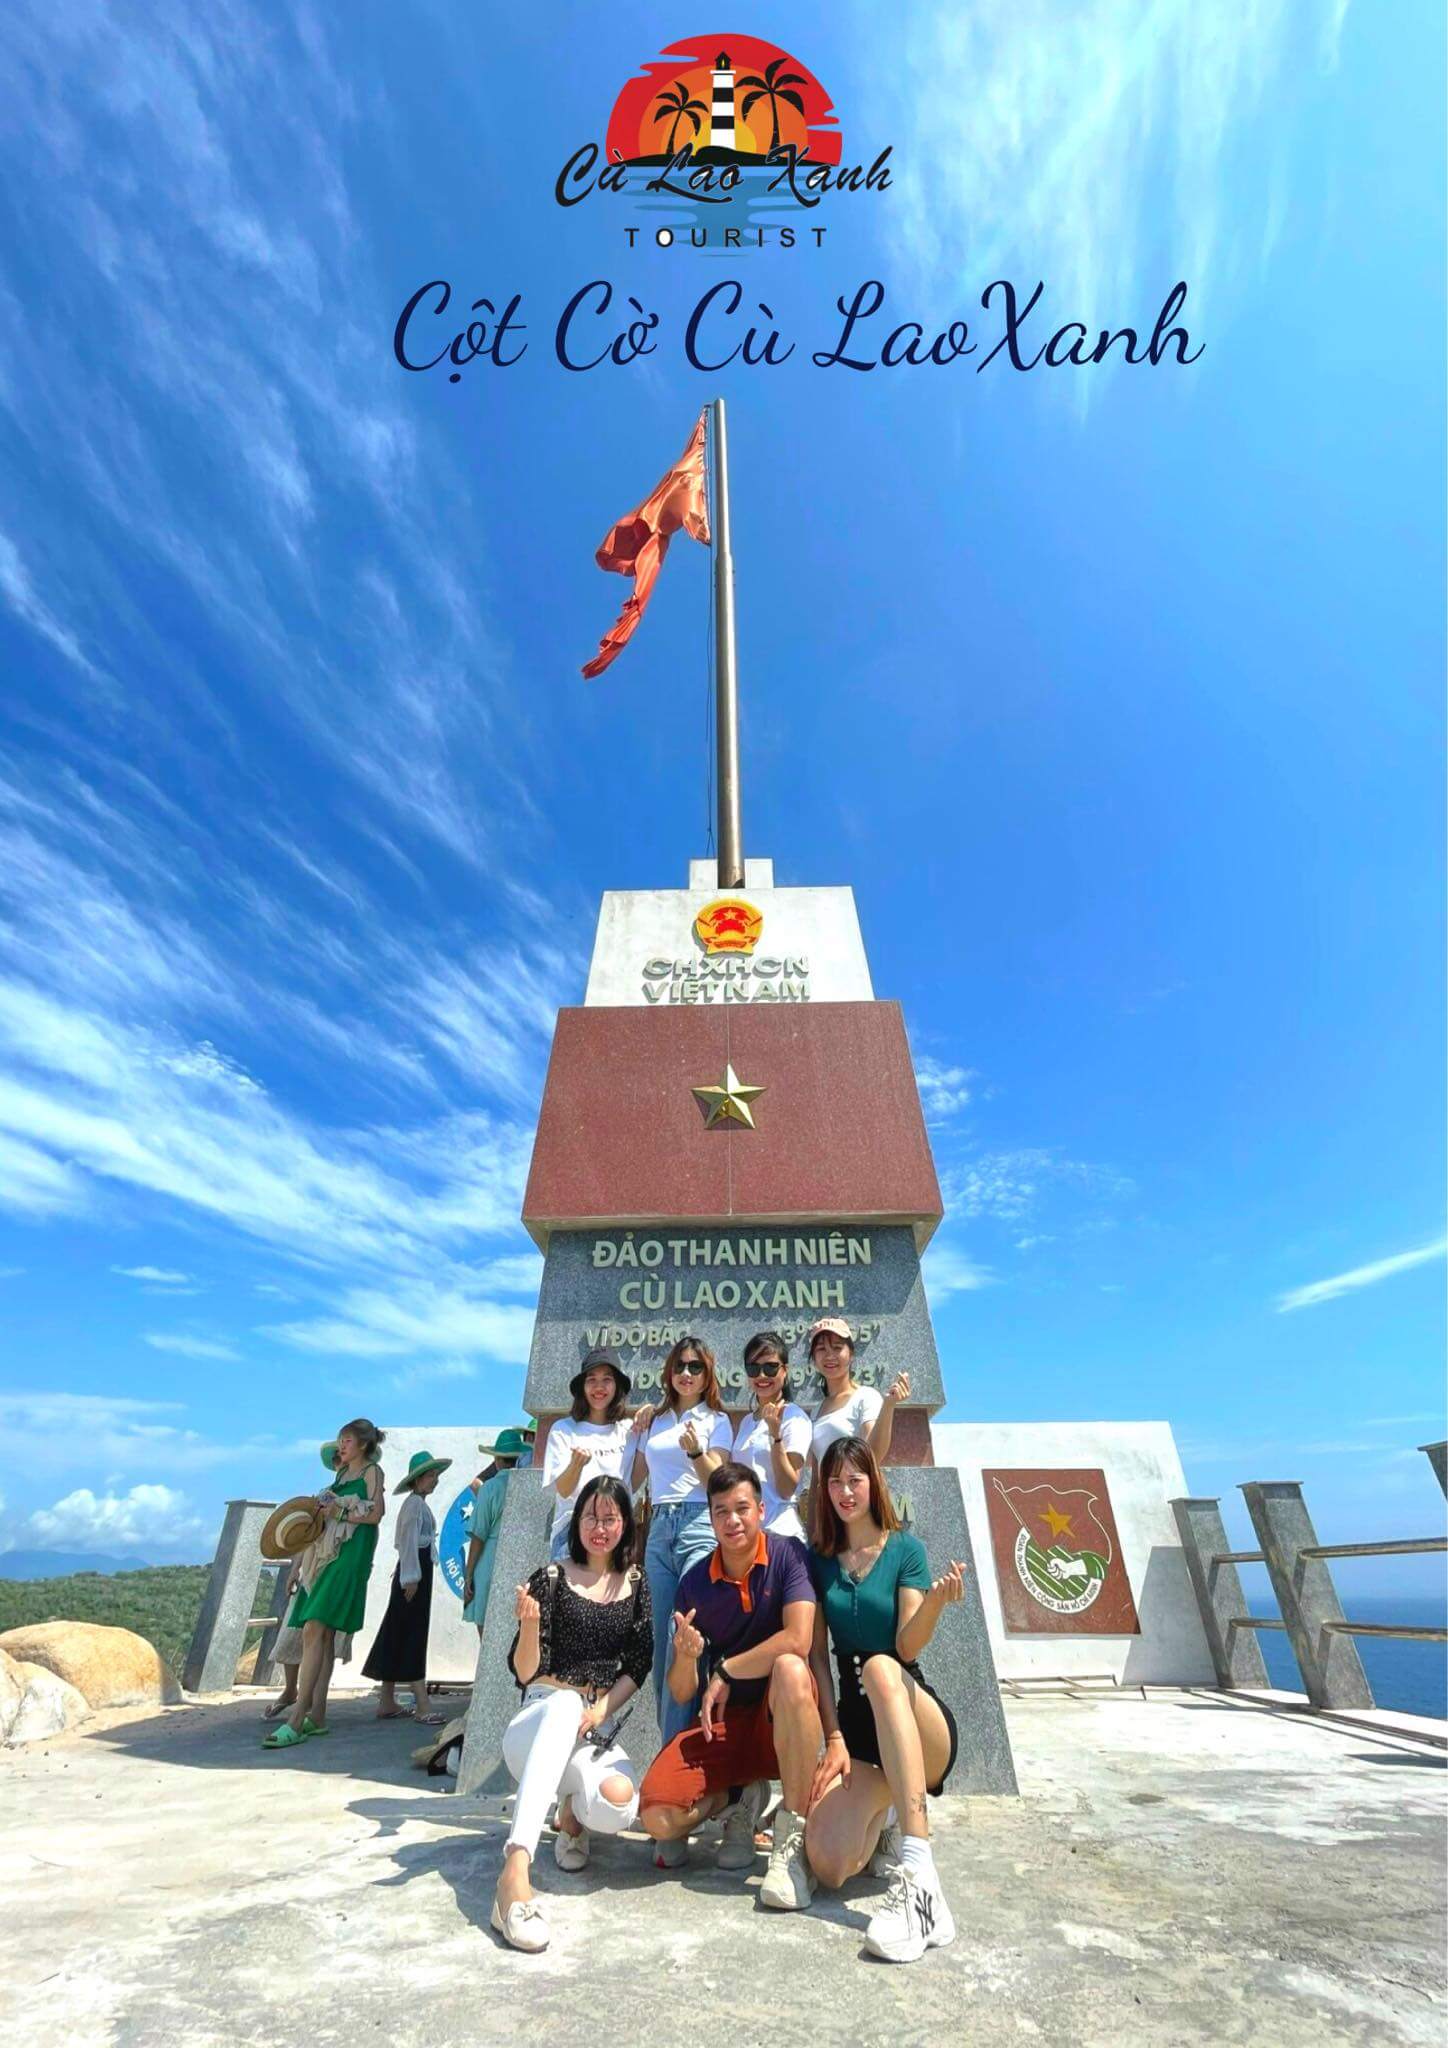 Chụp ảnh tại cột cờ Cù Lao Xanh